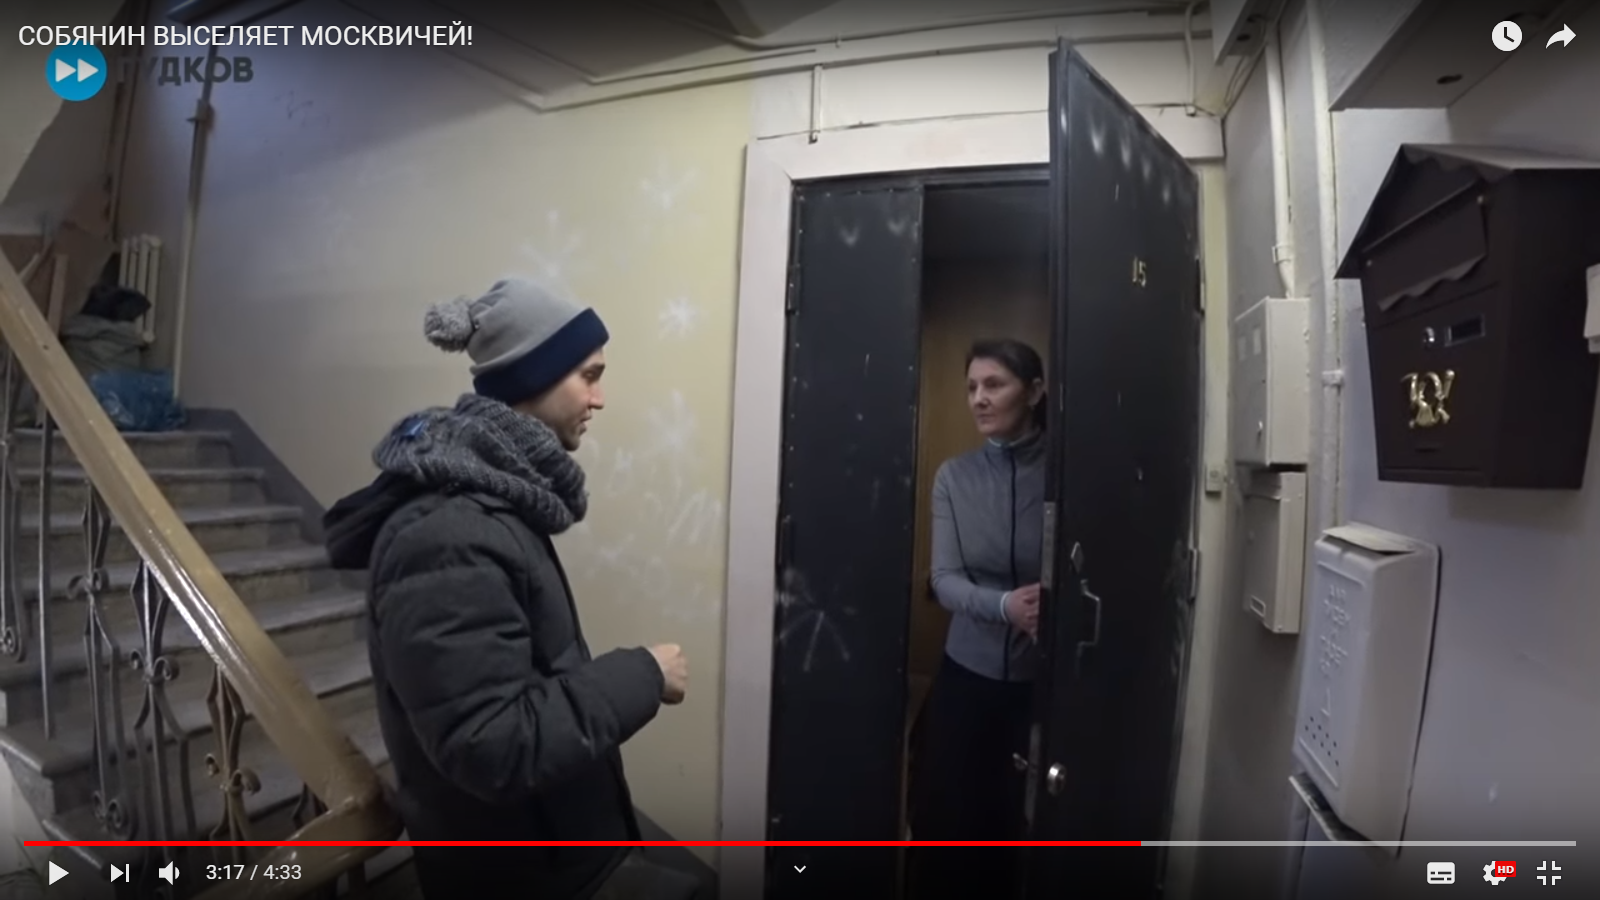 Незаконно, но очень хочется: как мэрия выселяет москвичей (видео)